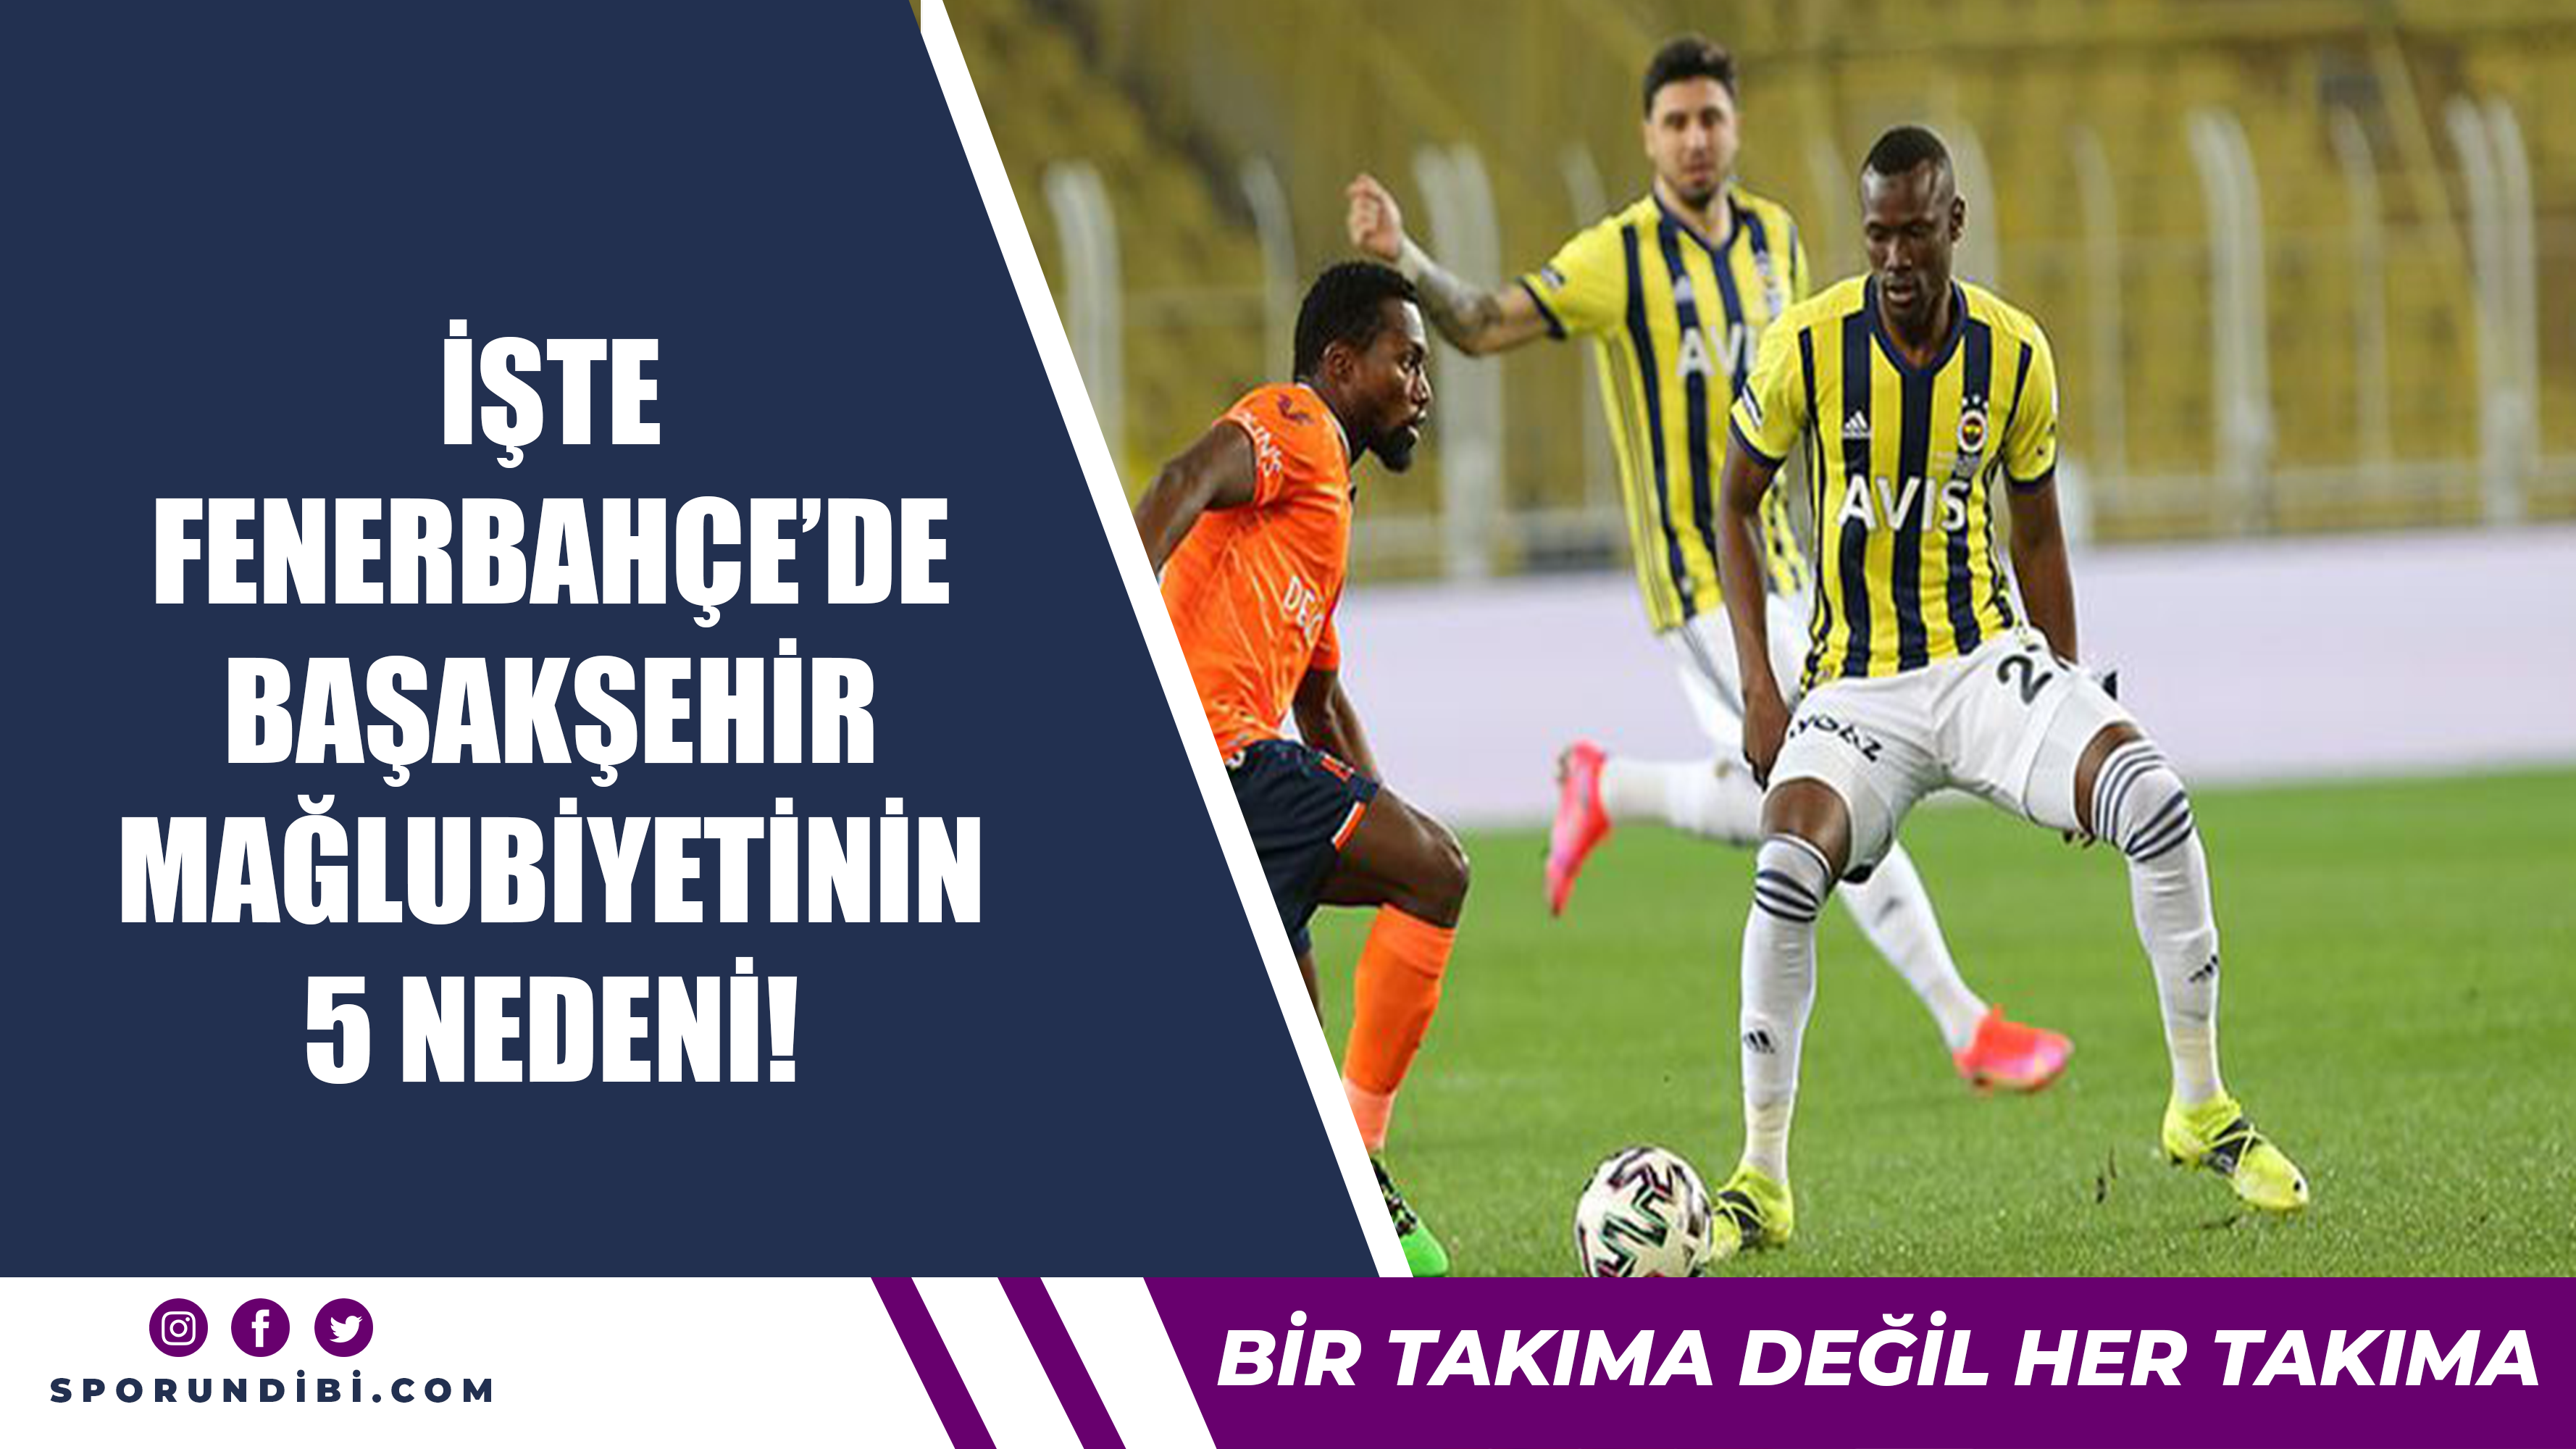 İşte Fenerbahçe'de Başakşehir mağlubiyetinin 5 nedeni!